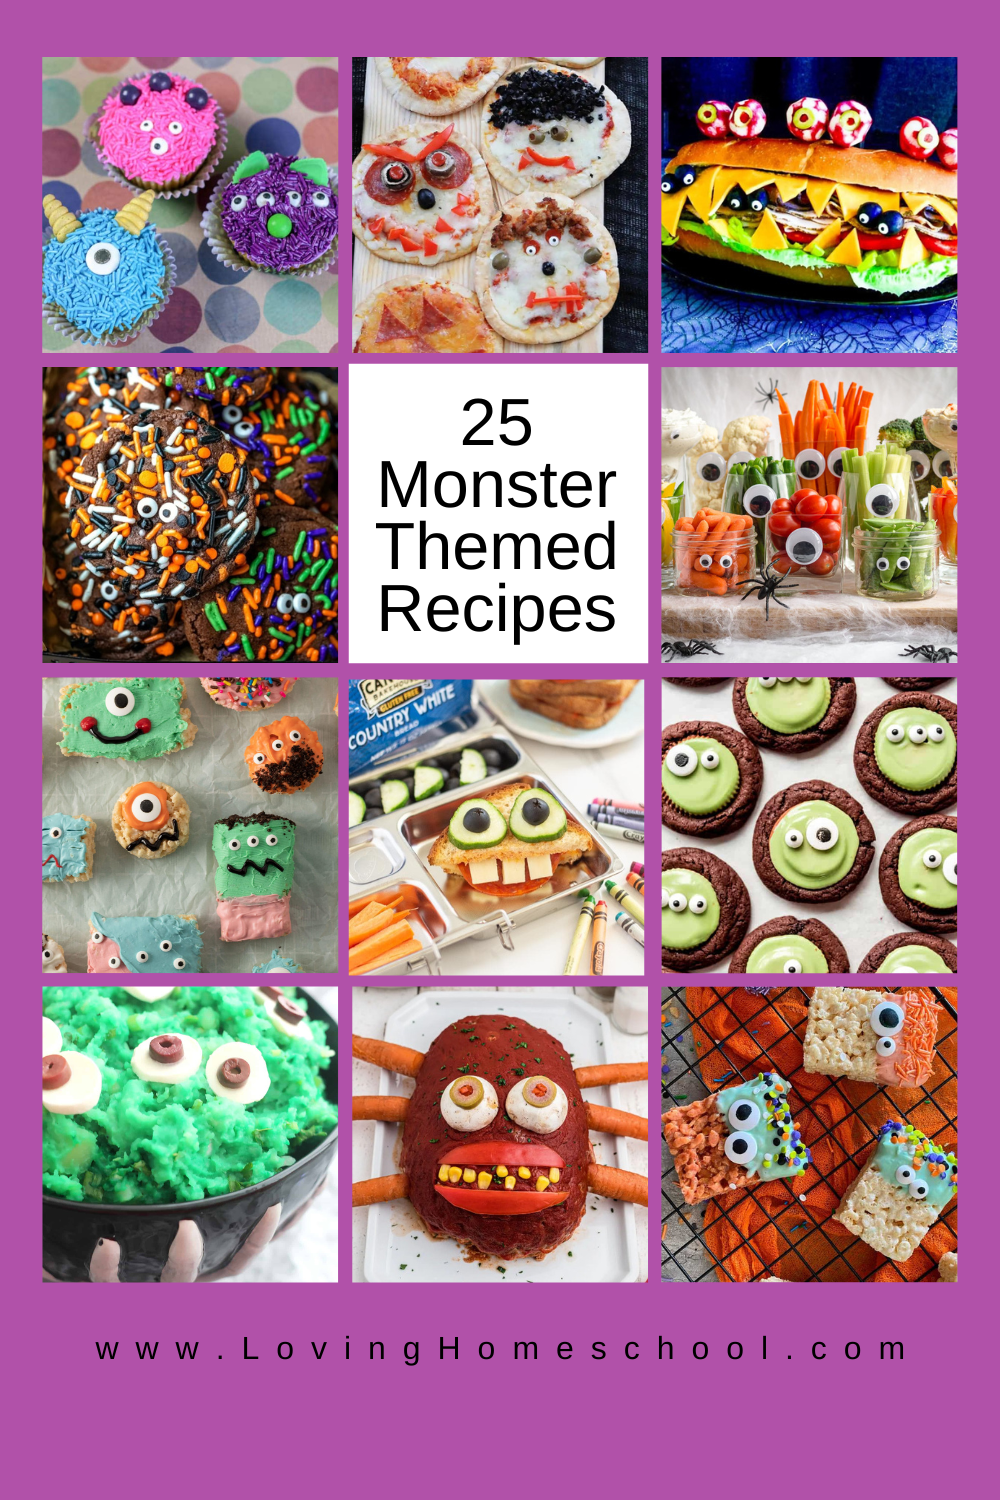 25 Monster Themed Recipes Pinterest Pin